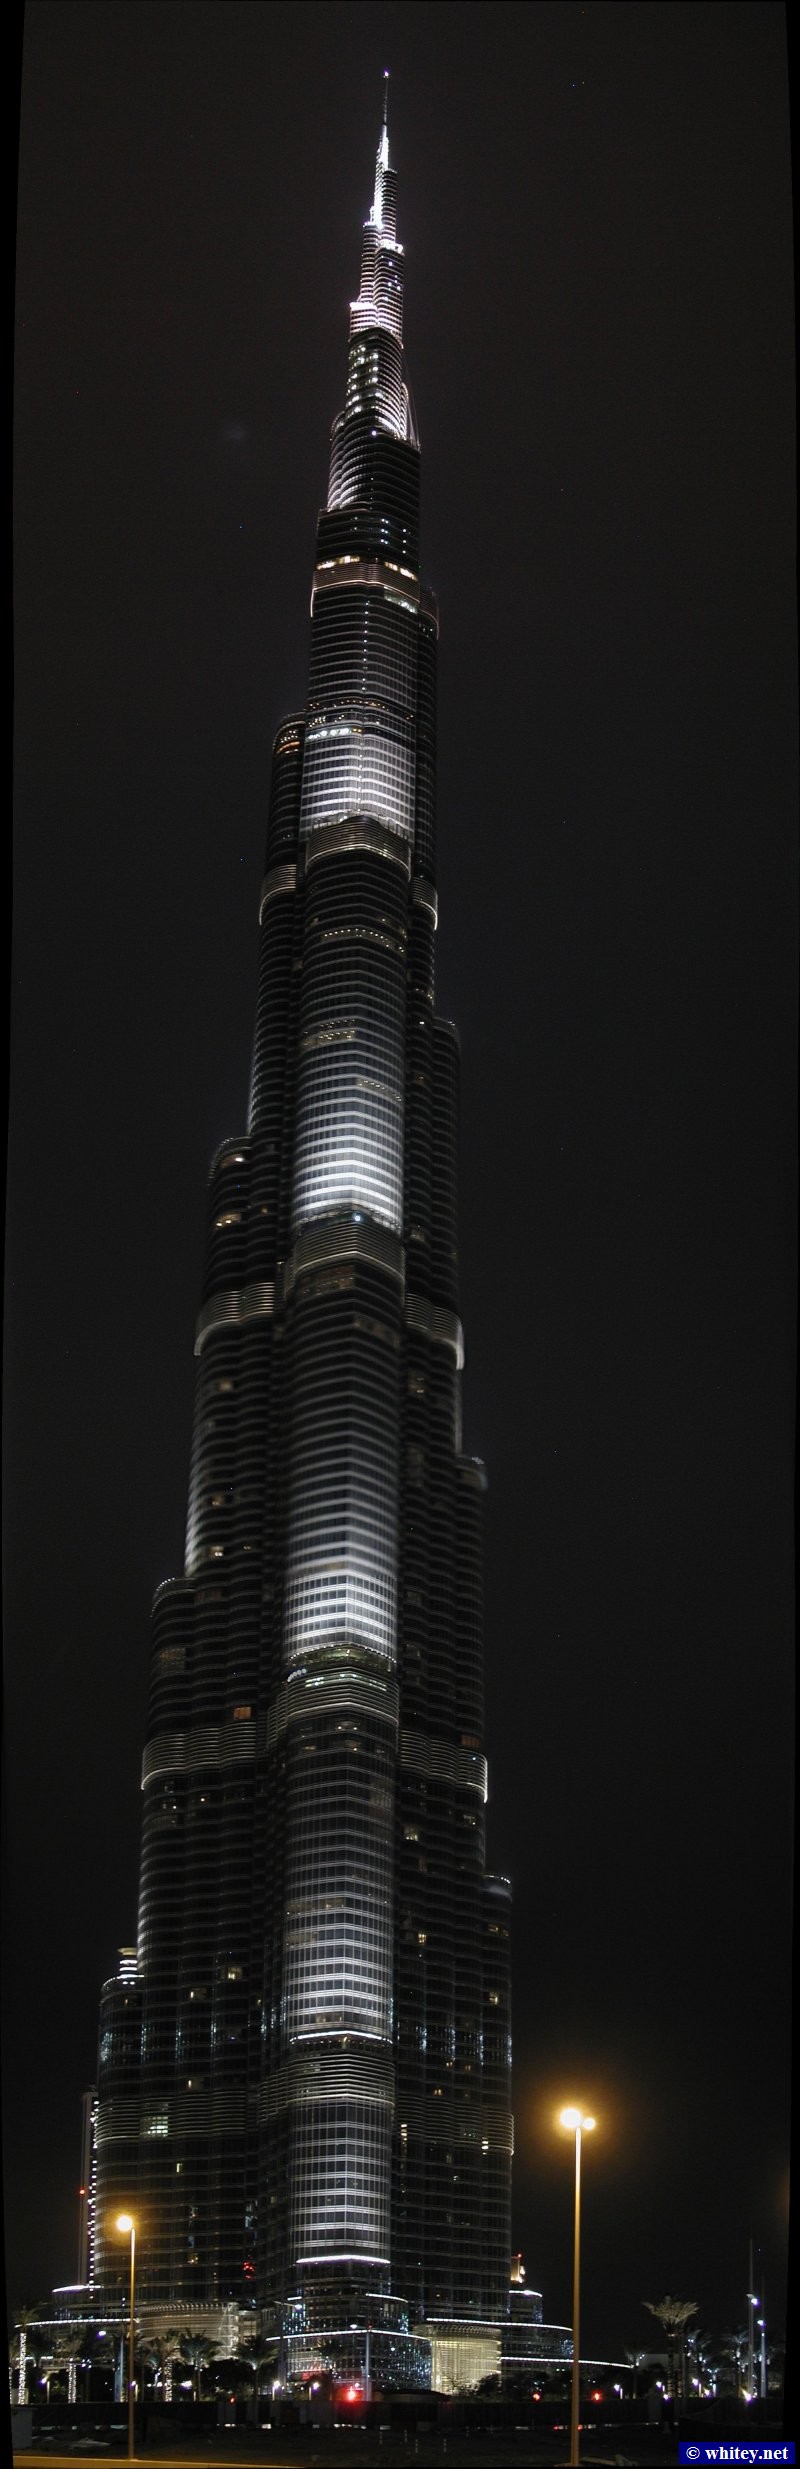 Burj Khalifa, 829m high, Dubai, UAE.